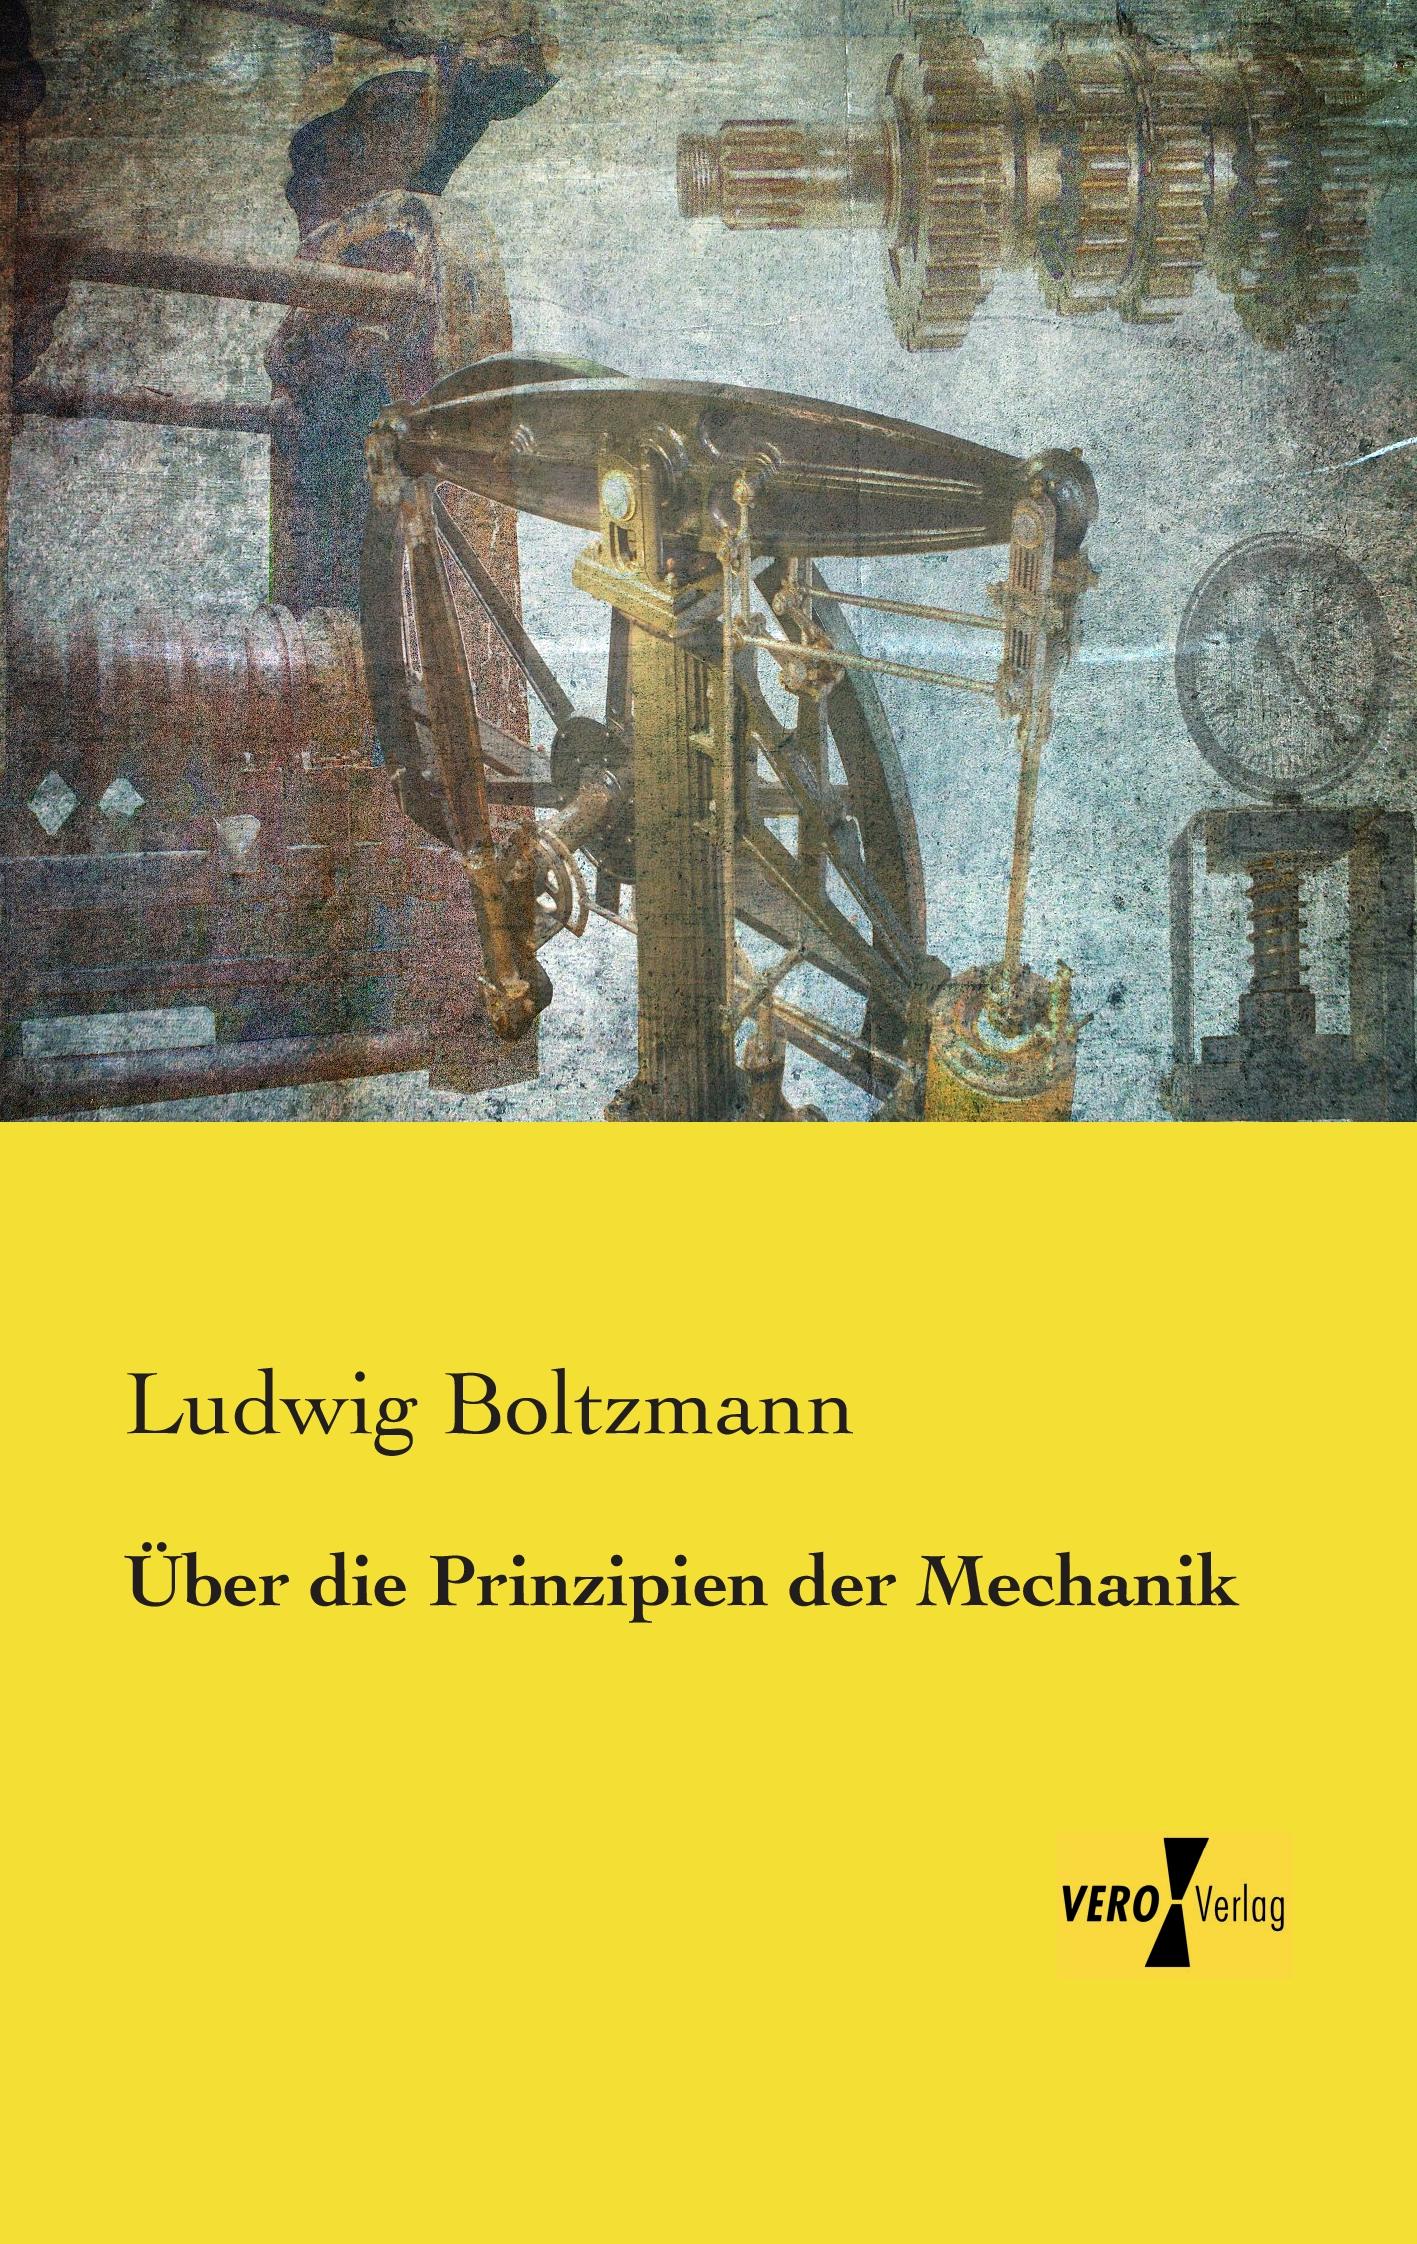 Ueber die Prinzipien der Mechanik - Boltzmann, Ludwig